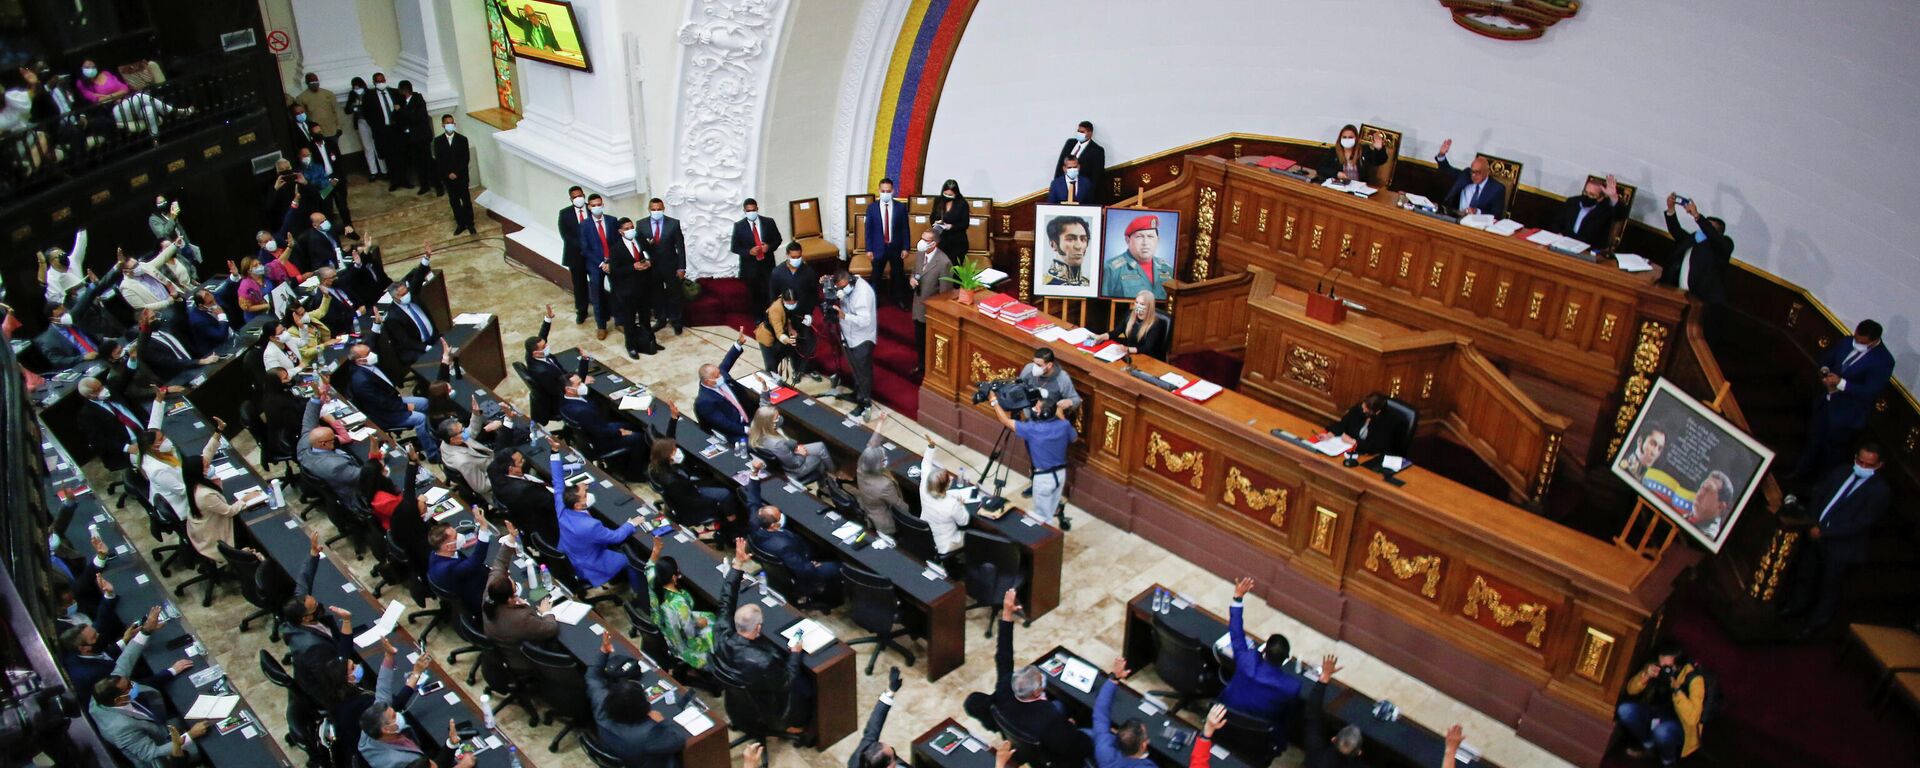 La seseión de elección de un nuevo Consejo Nacional Electoral en la Asamblea Nacional de Venezuela - Sputnik Mundo, 1920, 06.05.2021